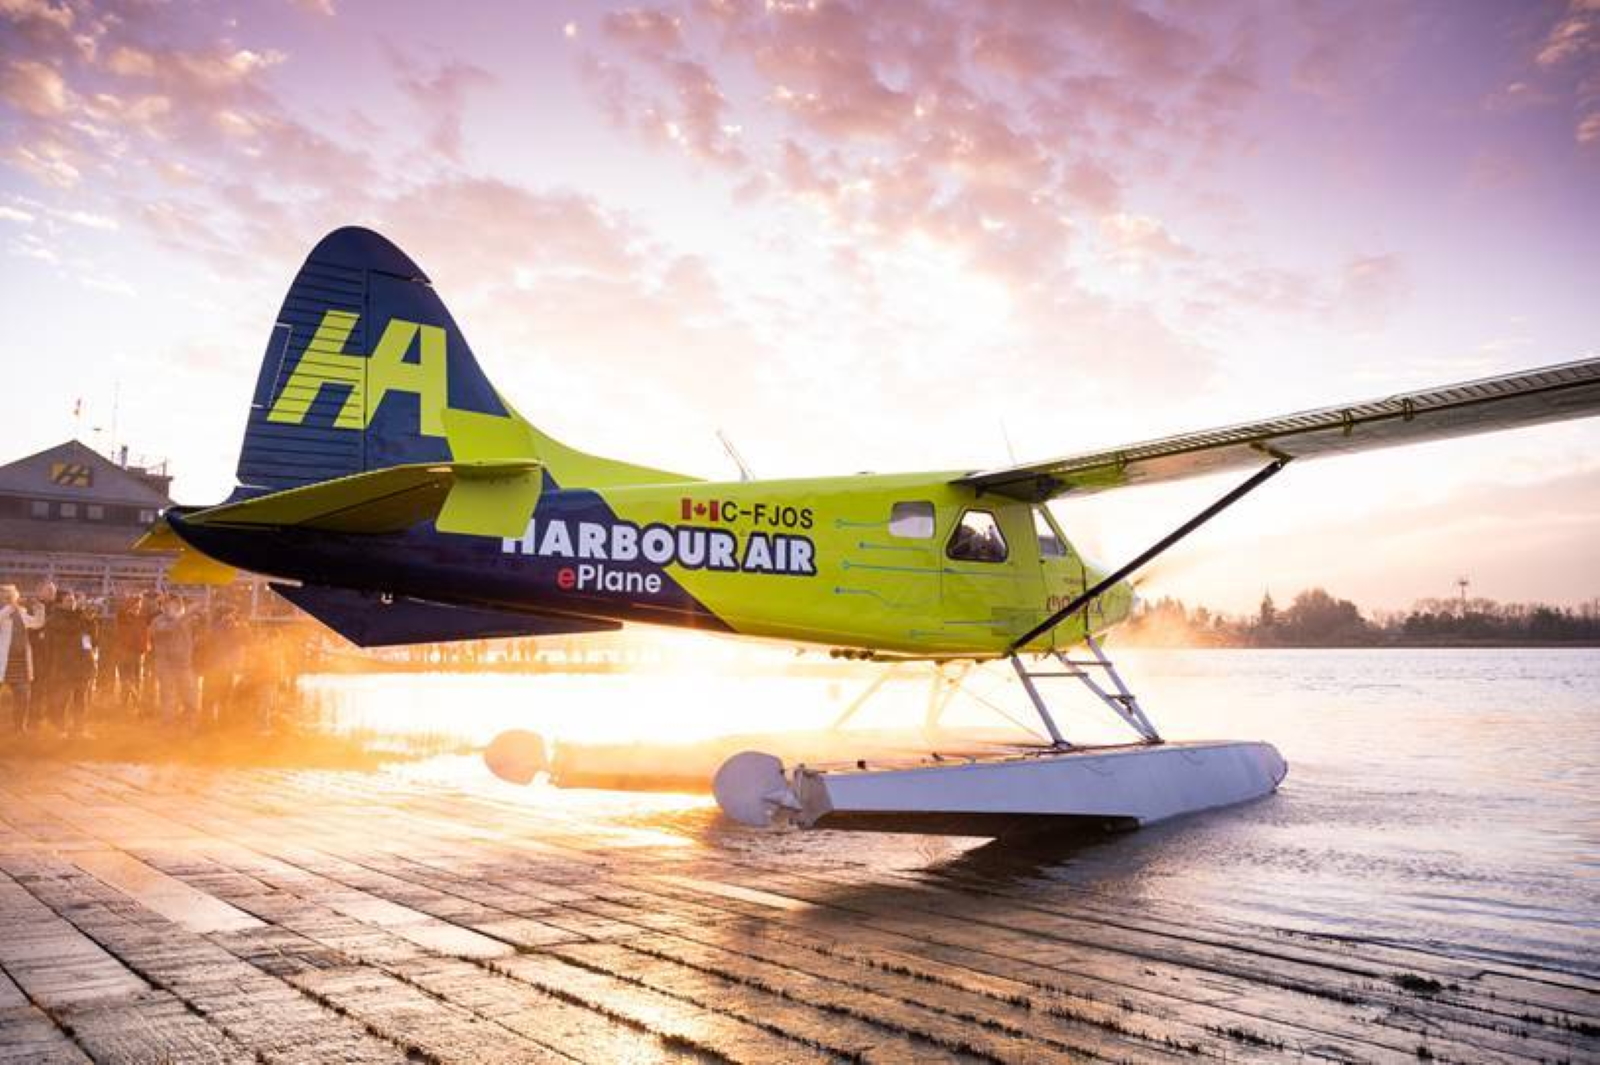 Le premier vol 100 % électrique a été réalisé par Harbour Air à partir d'un de Havilland Canada DHC-2 de conception ancienne, dont la motorisation thermique a été remplacée. © Harbour Air